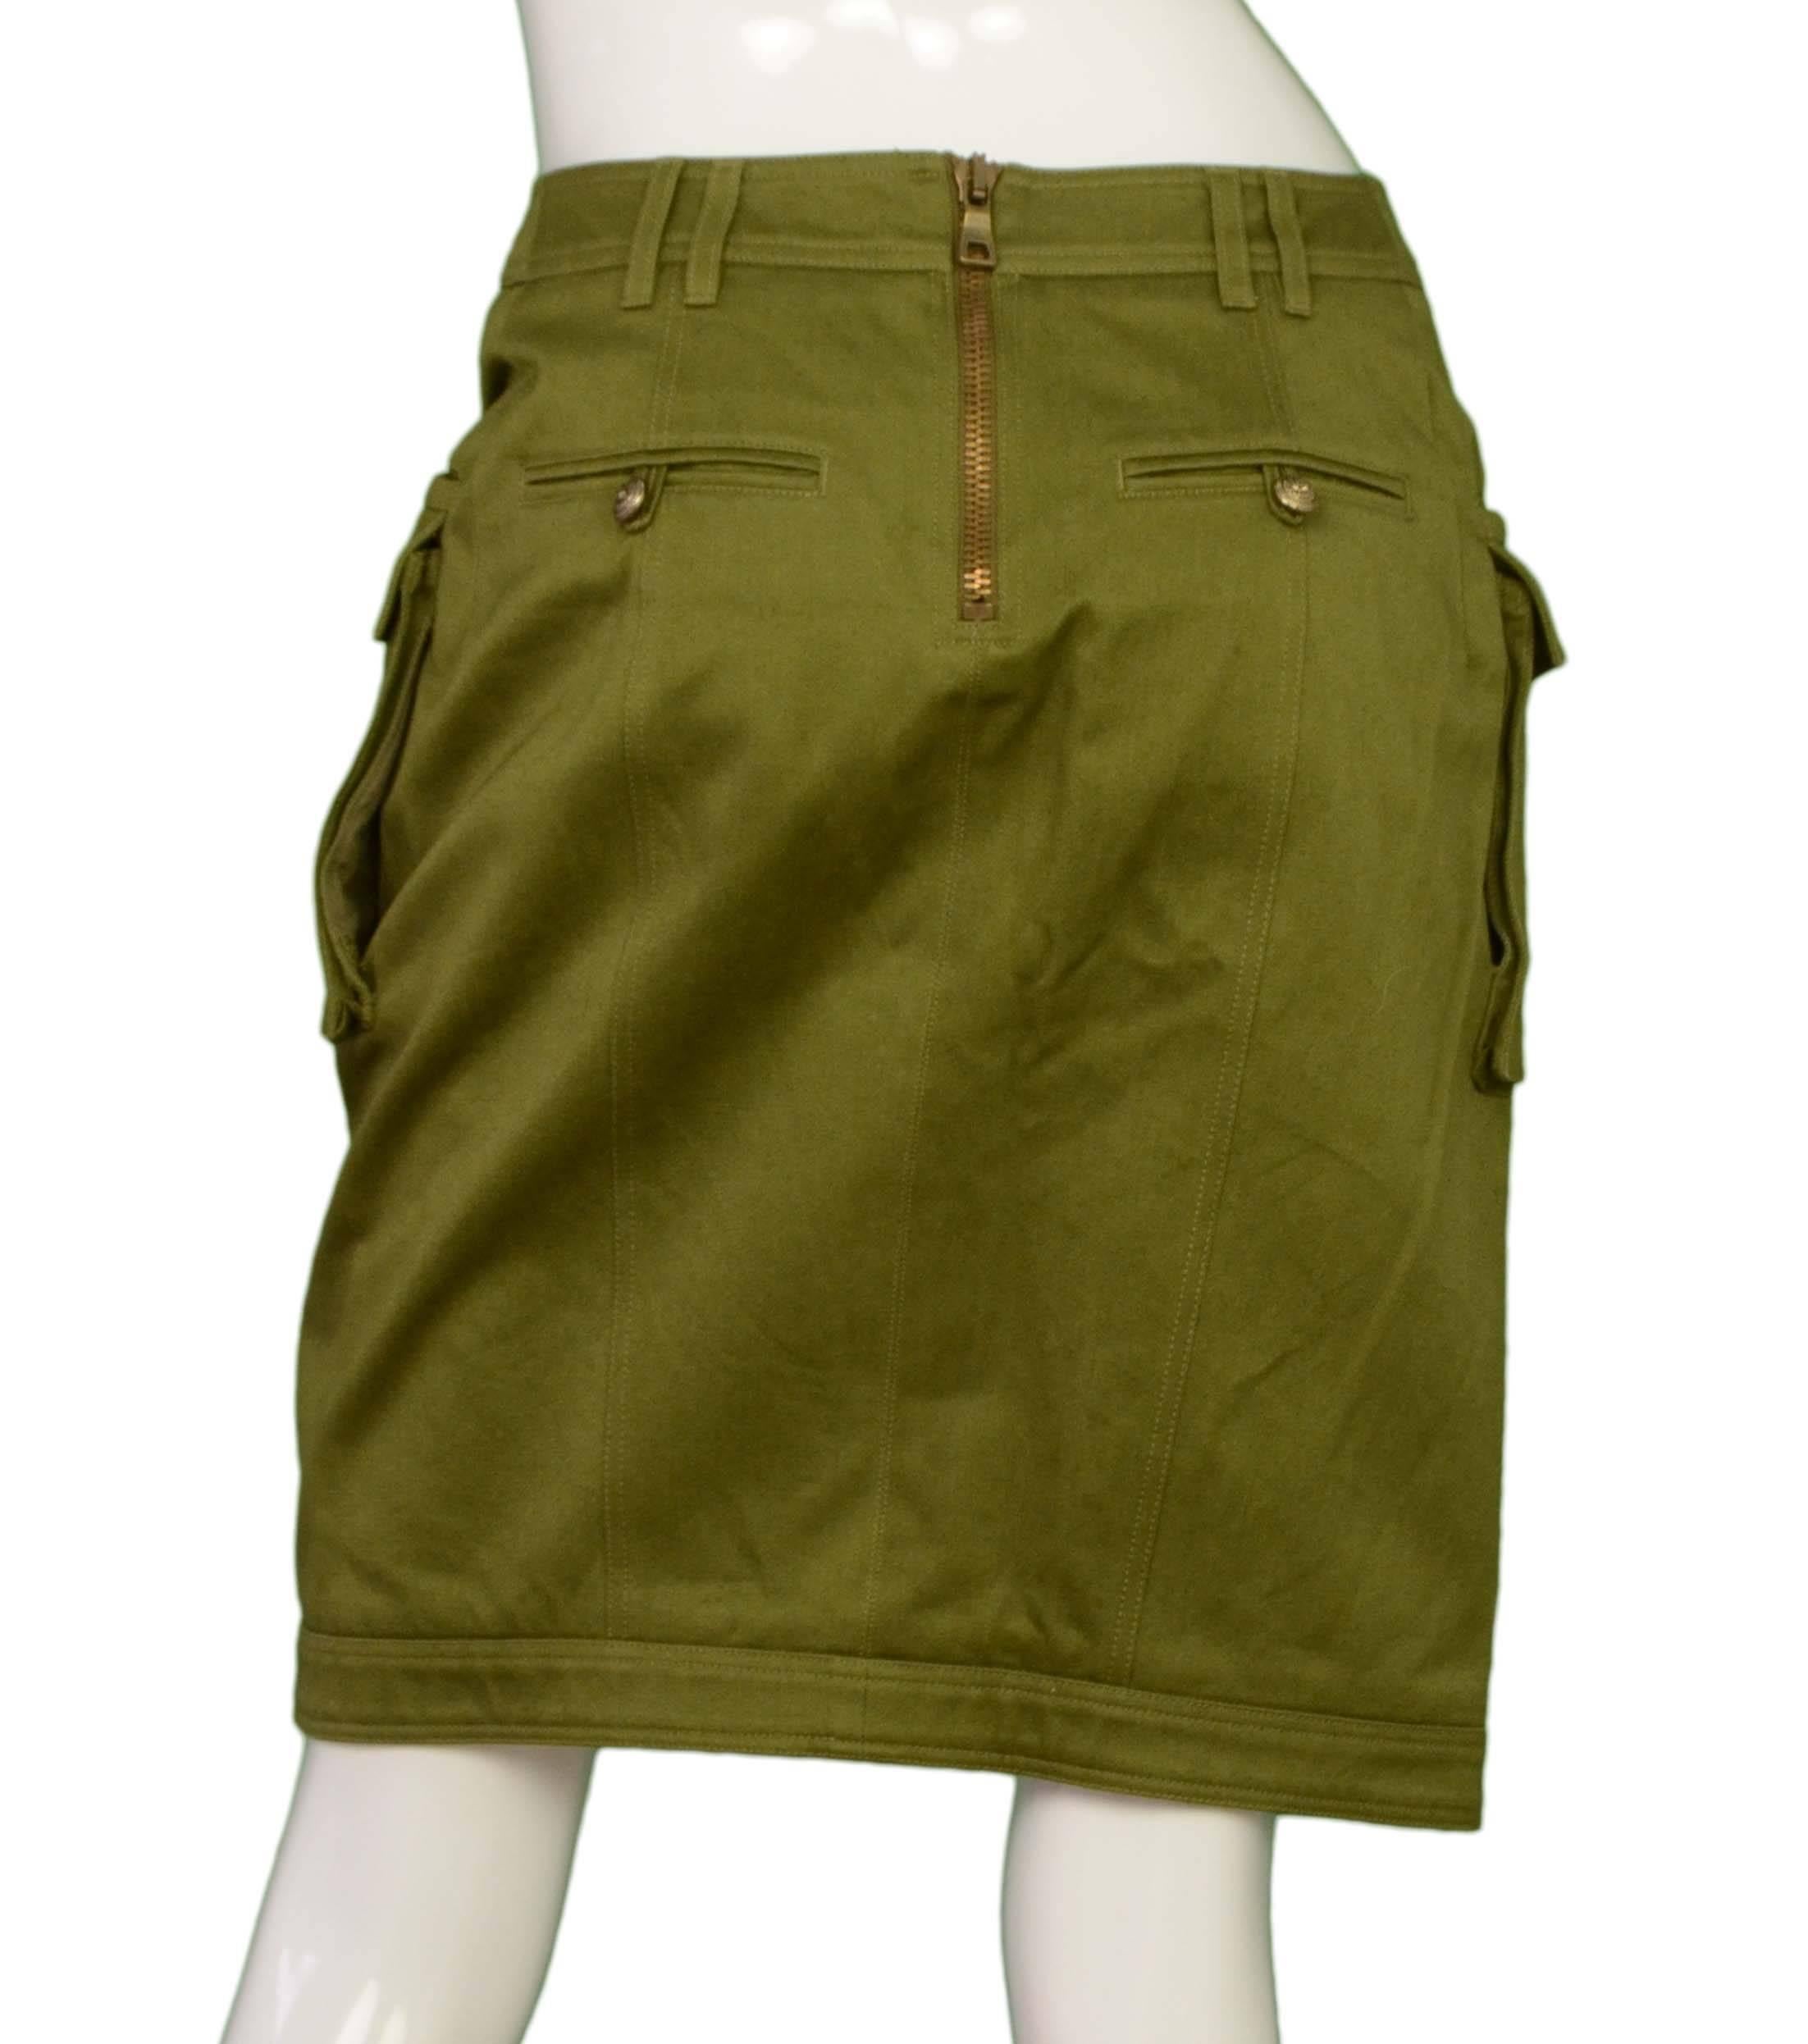 olive green cargo skirt